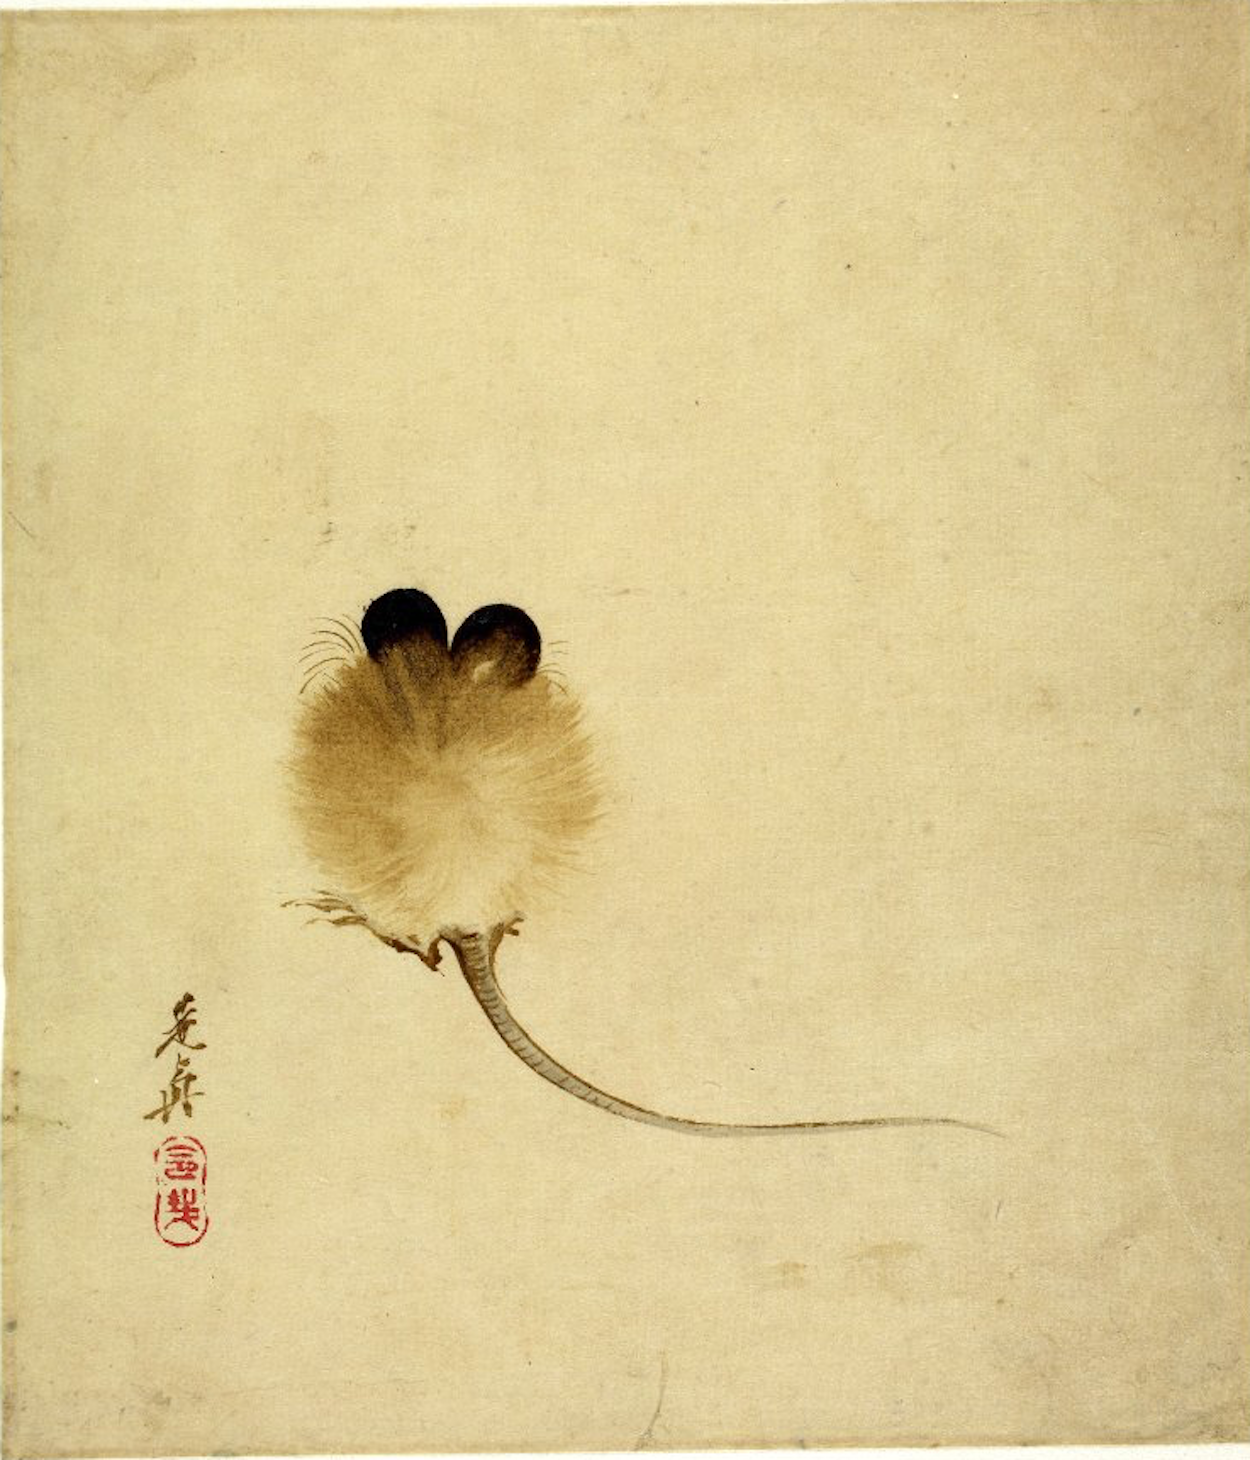 鼠 by 柴田 是真 - 19世纪 - 19.4 x 16.8 厘米 大英博物馆